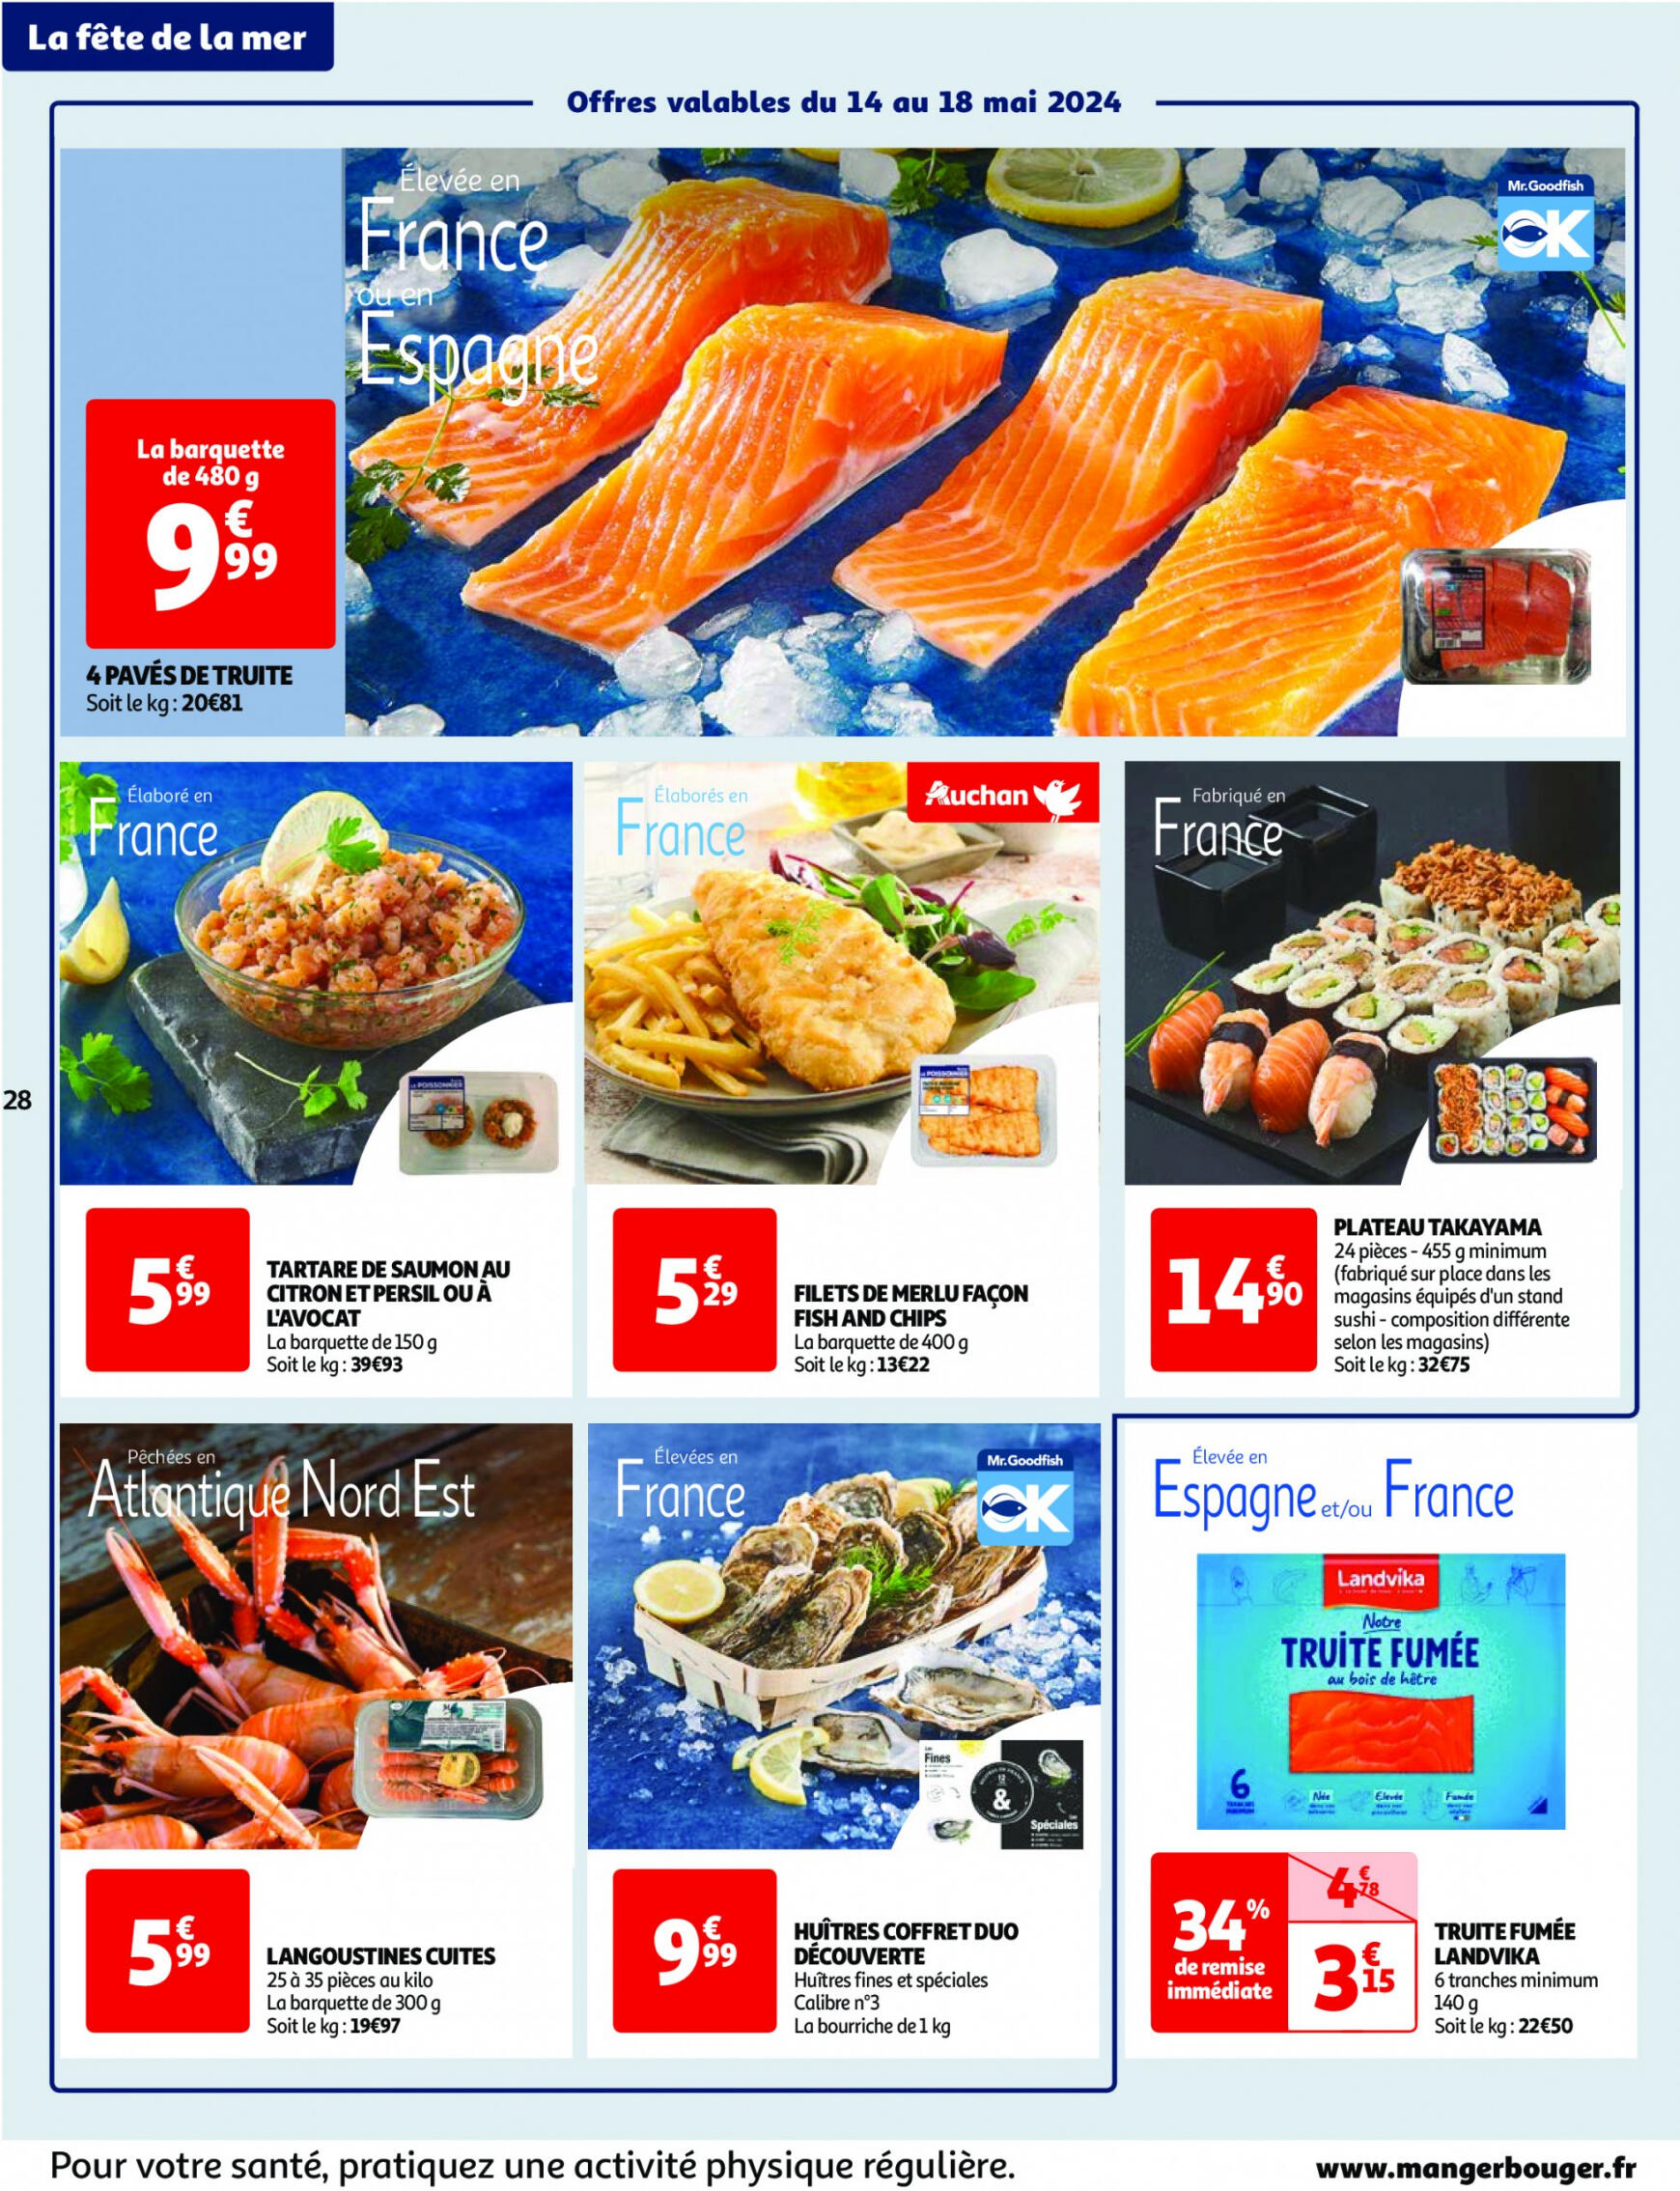 auchan - Prospectus Auchan actuel 14.05. - 21.05. - page: 28